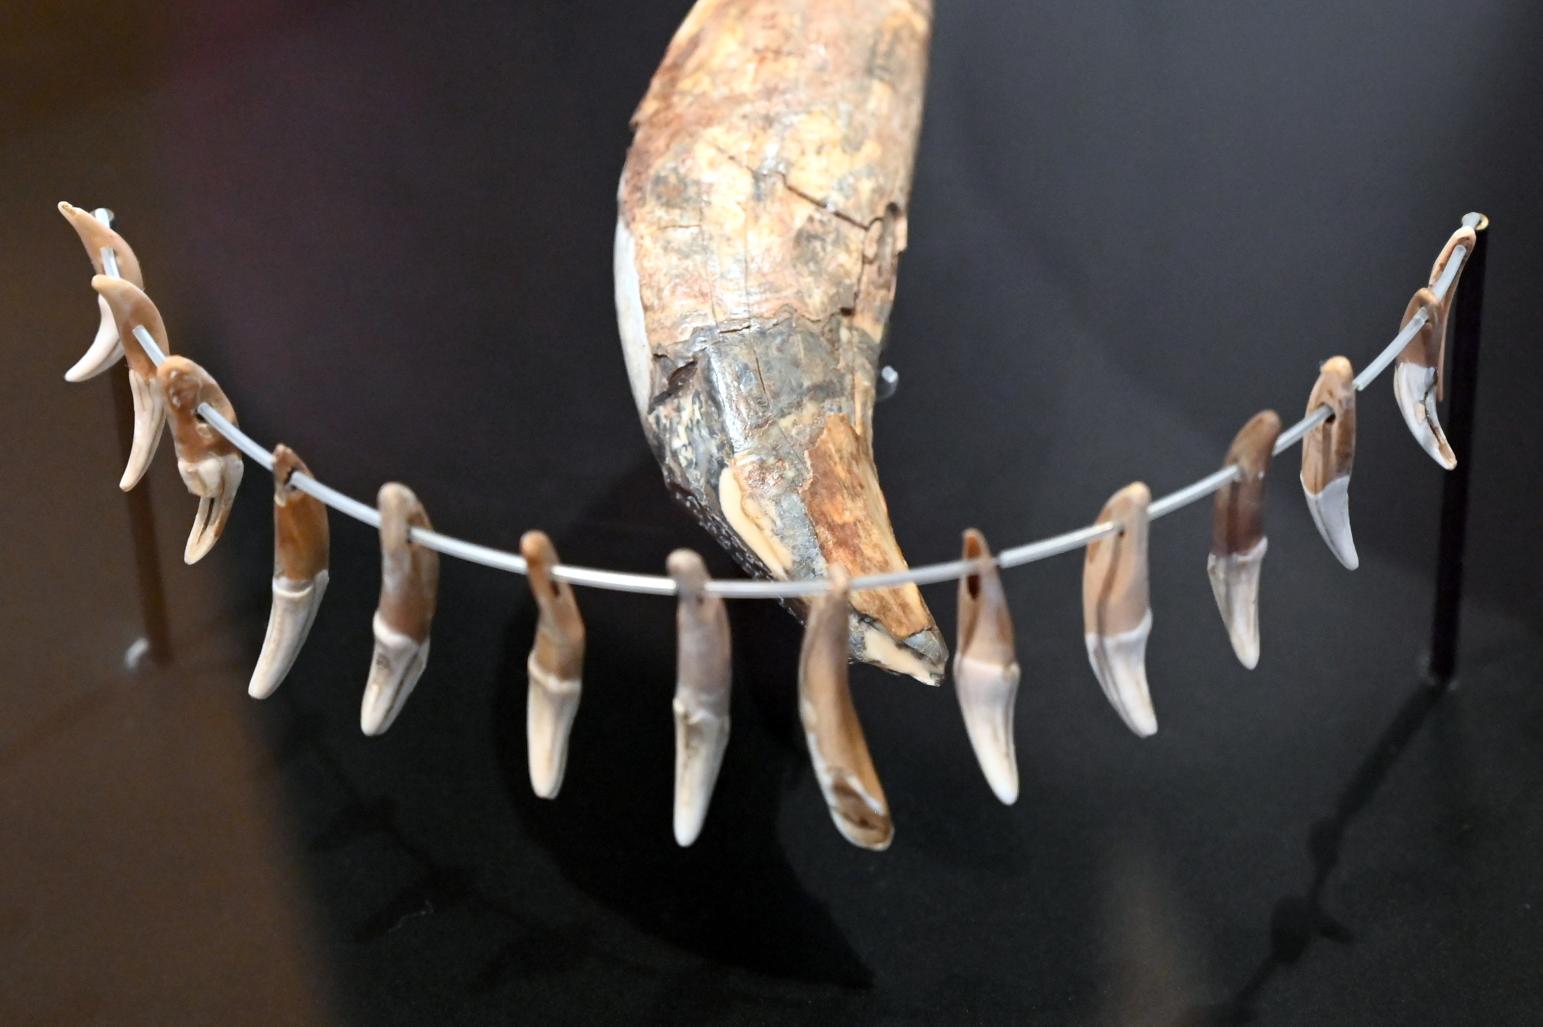 18 durchlochte Fuchszähne, Neolithikum (Jungsteinzeit), 5500 - 1700 v. Chr., 3400 - 2800 v. Chr., Bild 1/3